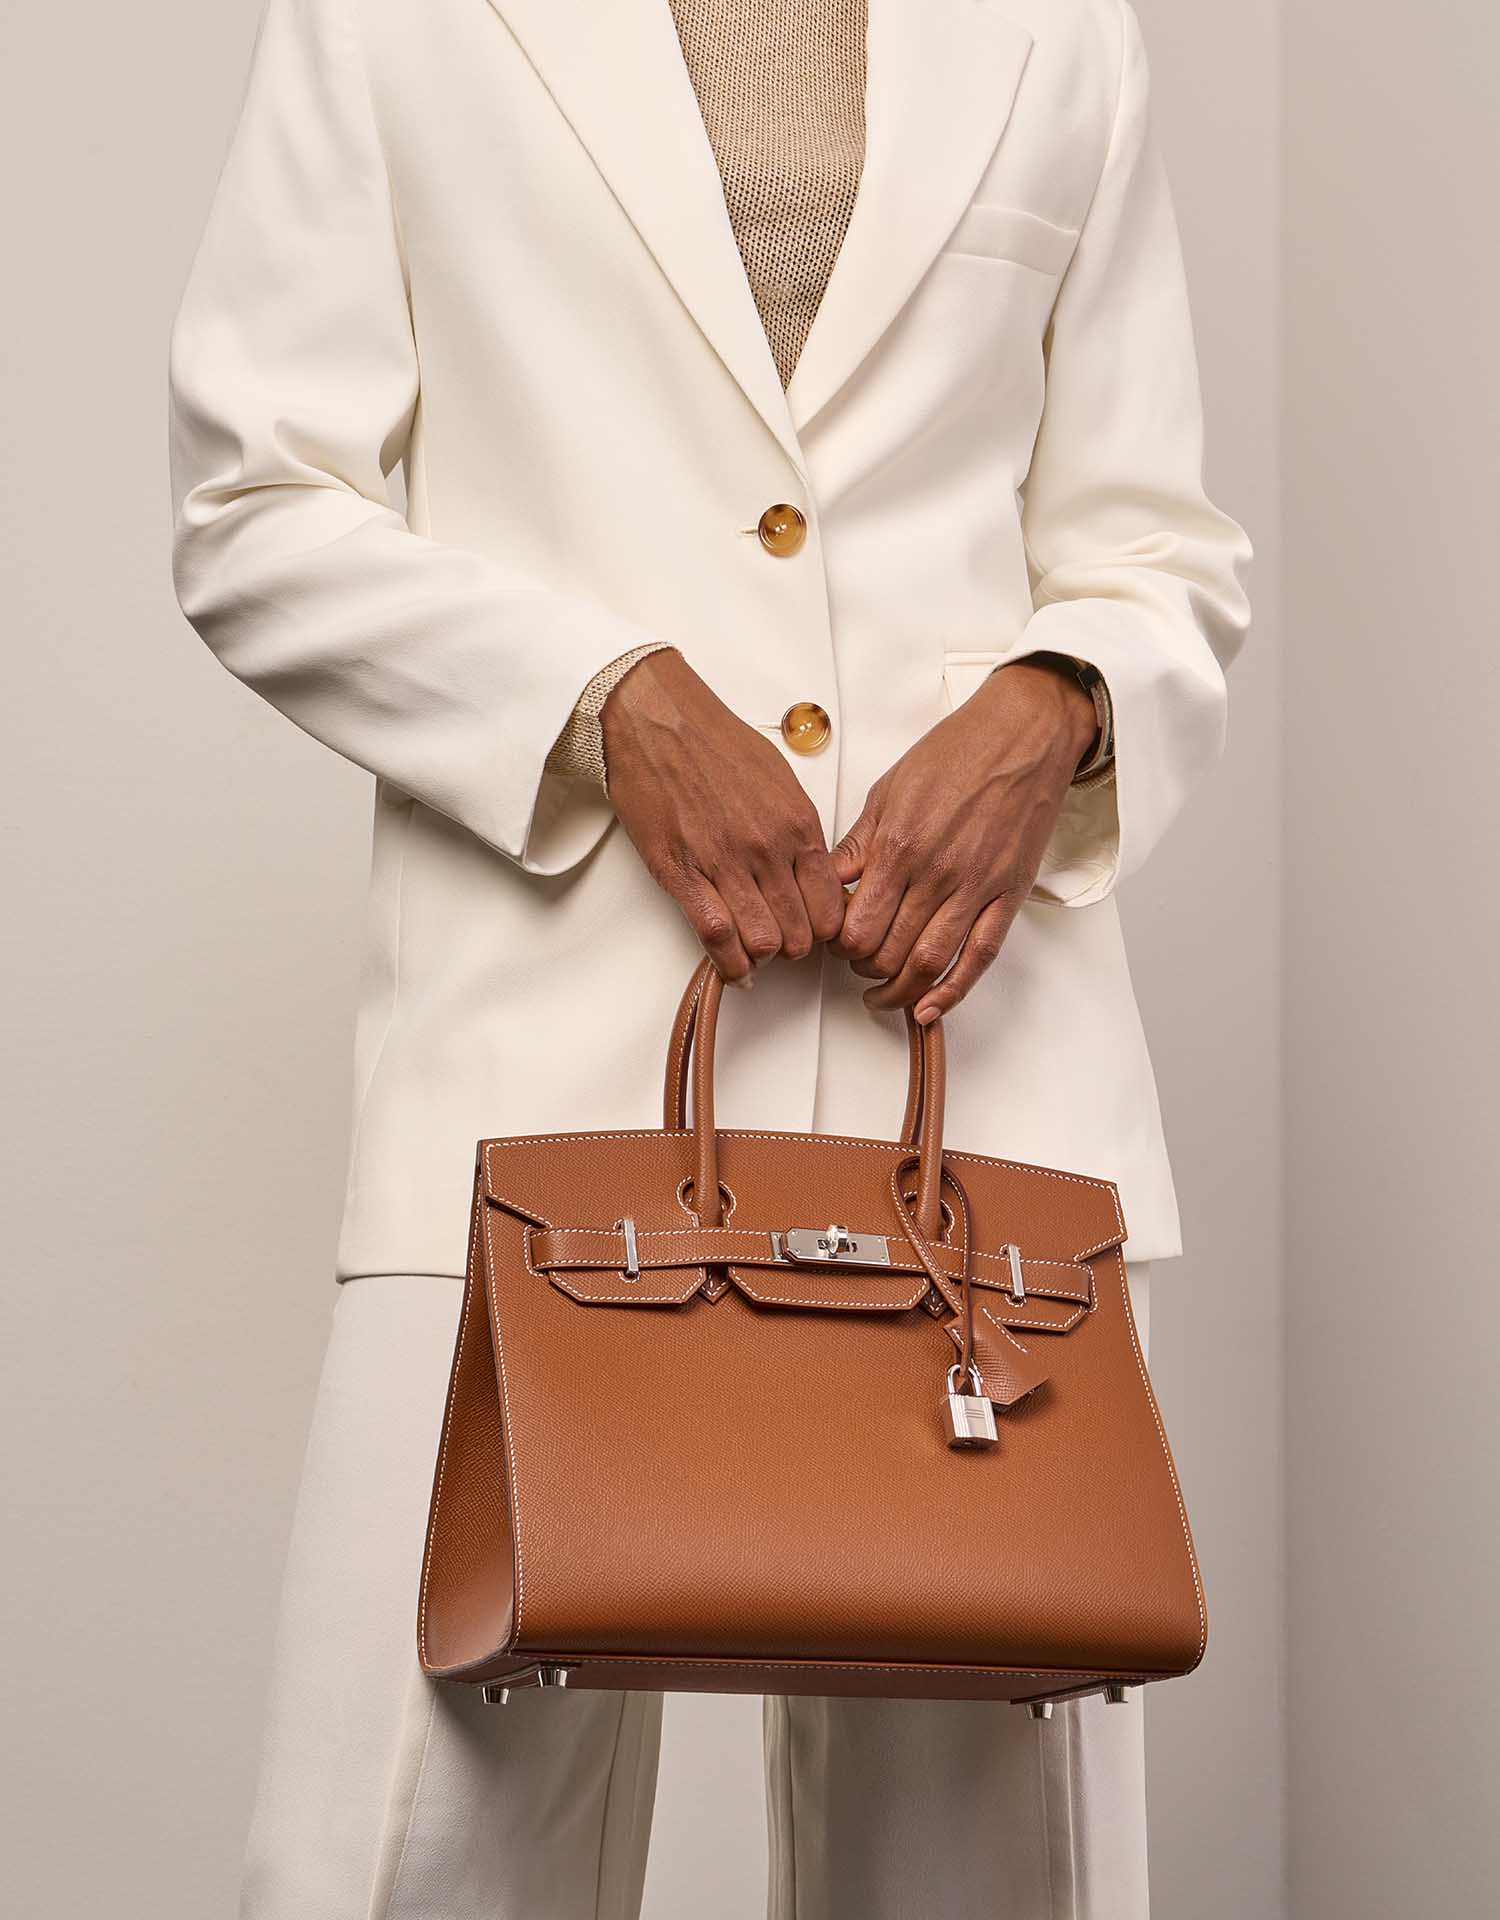 Hermès Birkin 30 Gold Größen Getragen | Verkaufen Sie Ihre Designer-Tasche auf Saclab.com